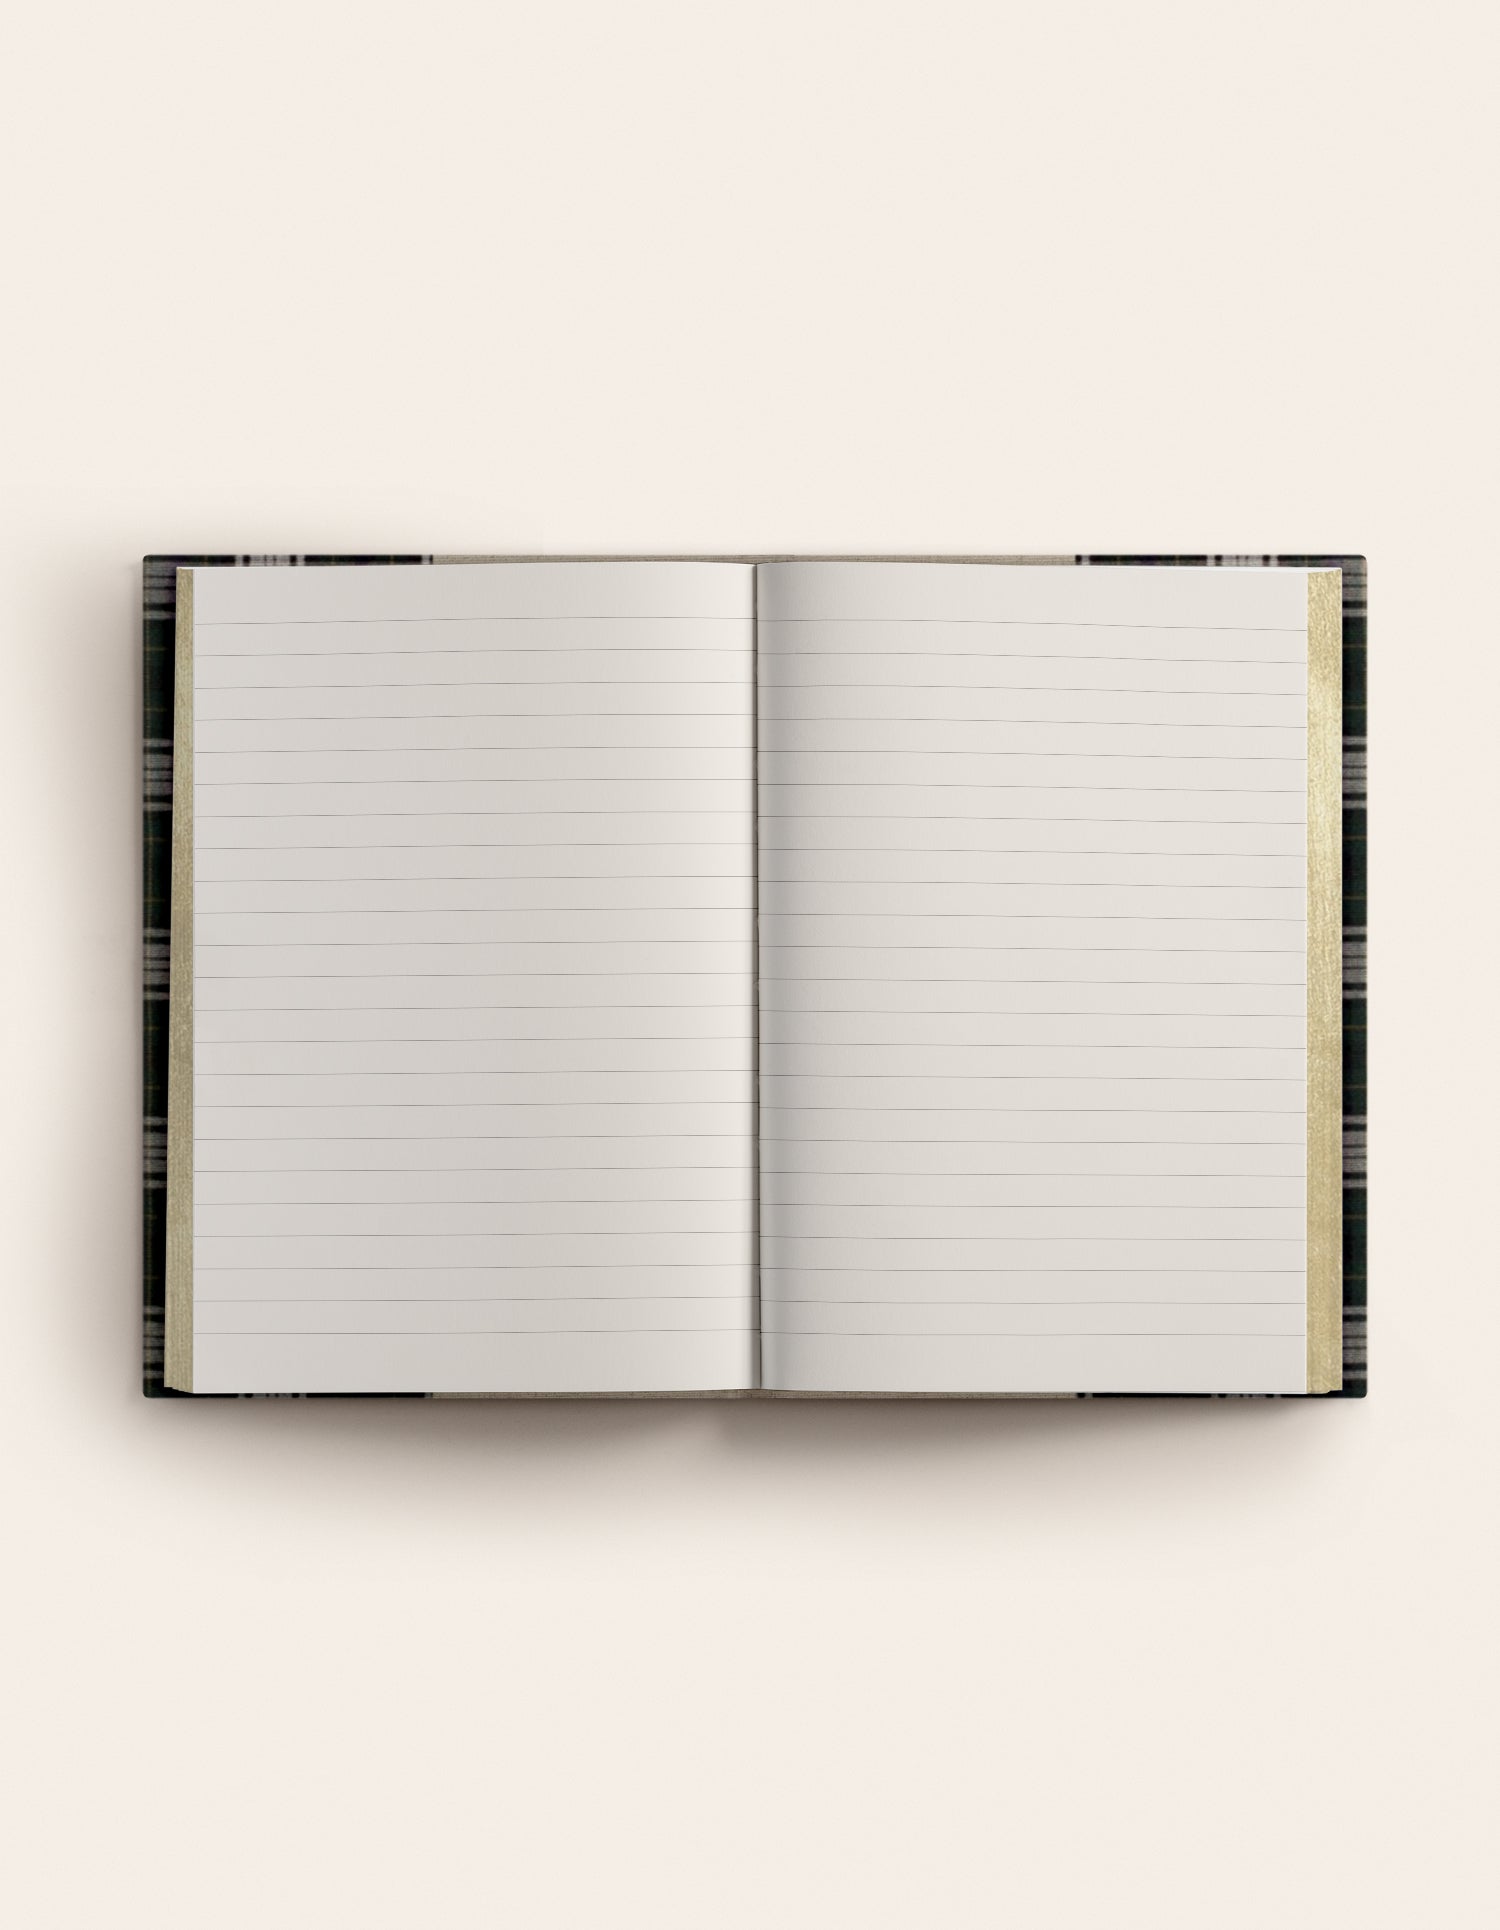 Dundee notebook